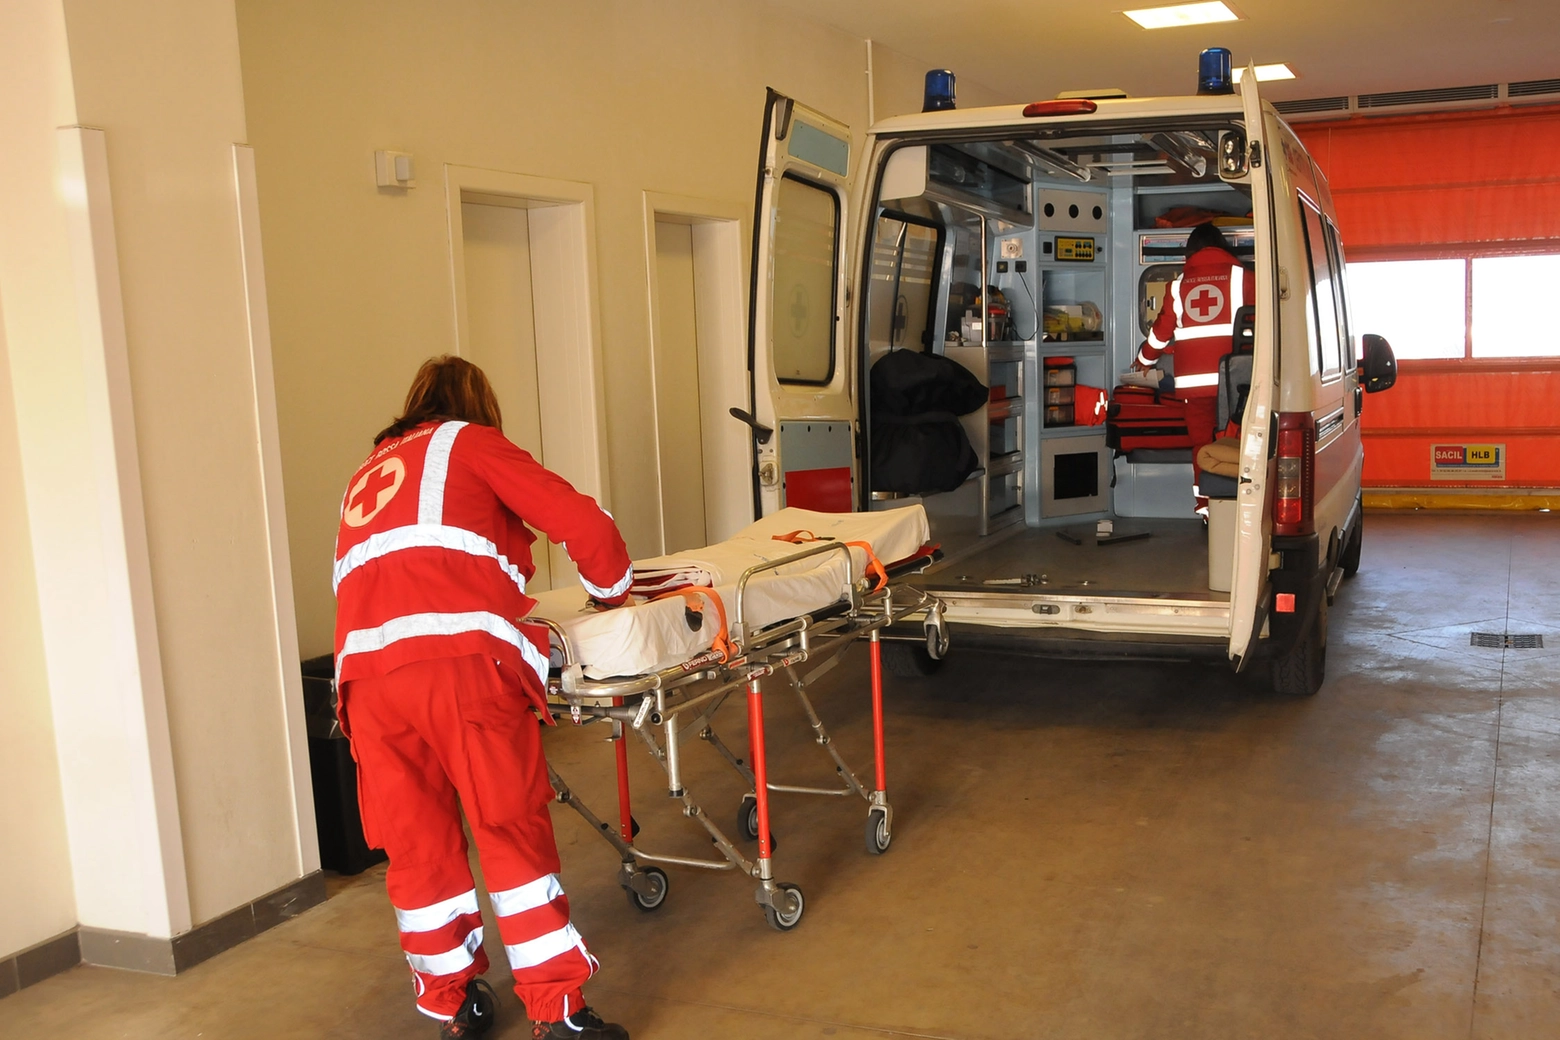 Un'ambulanza al pronto soccorso, foto generica